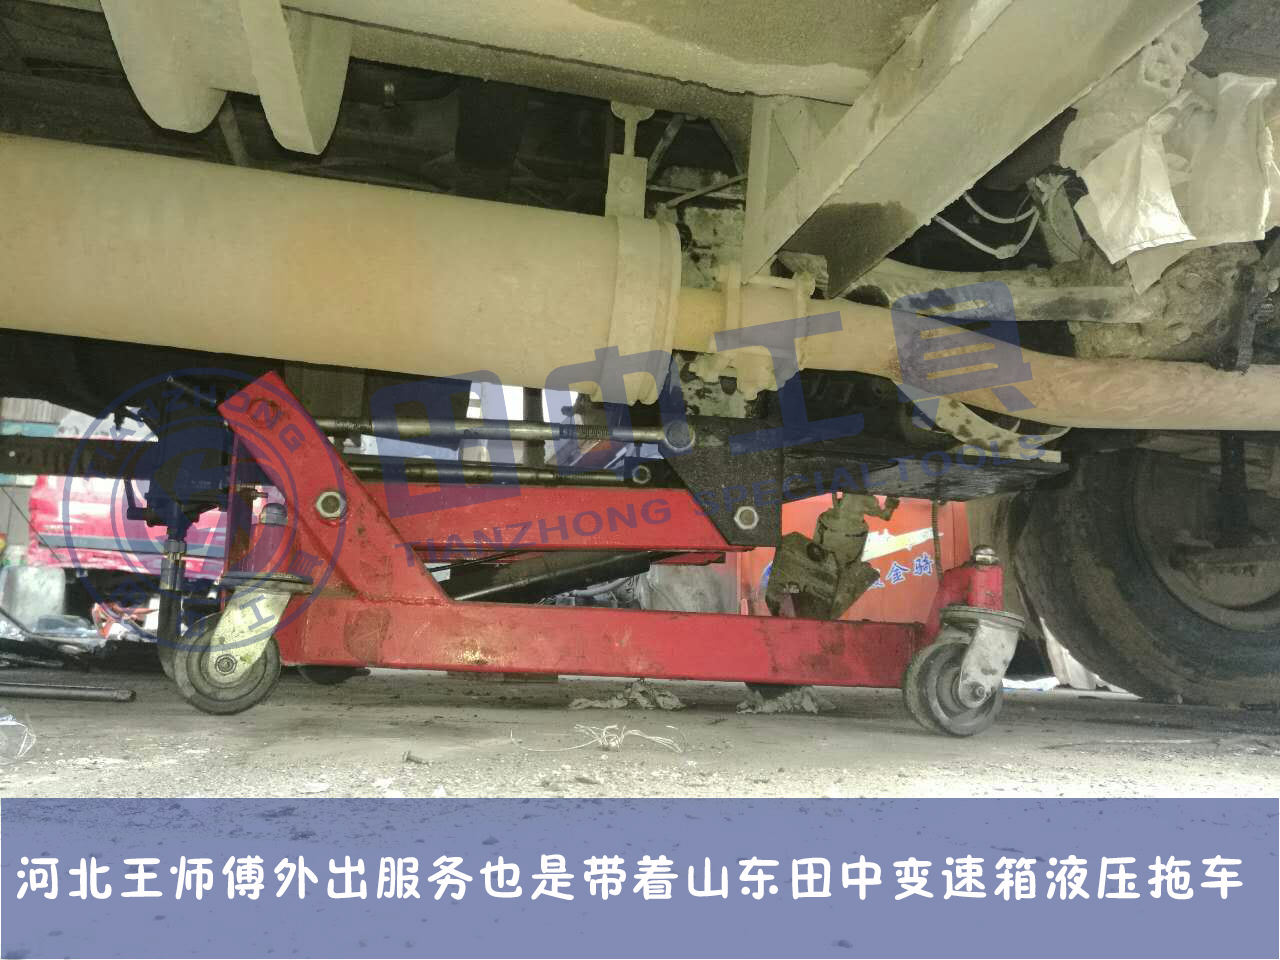 变速箱低位运送器 卡变速箱托架 可调试低位运送器 卡车变速箱液压拖车 田中工具TZ600103